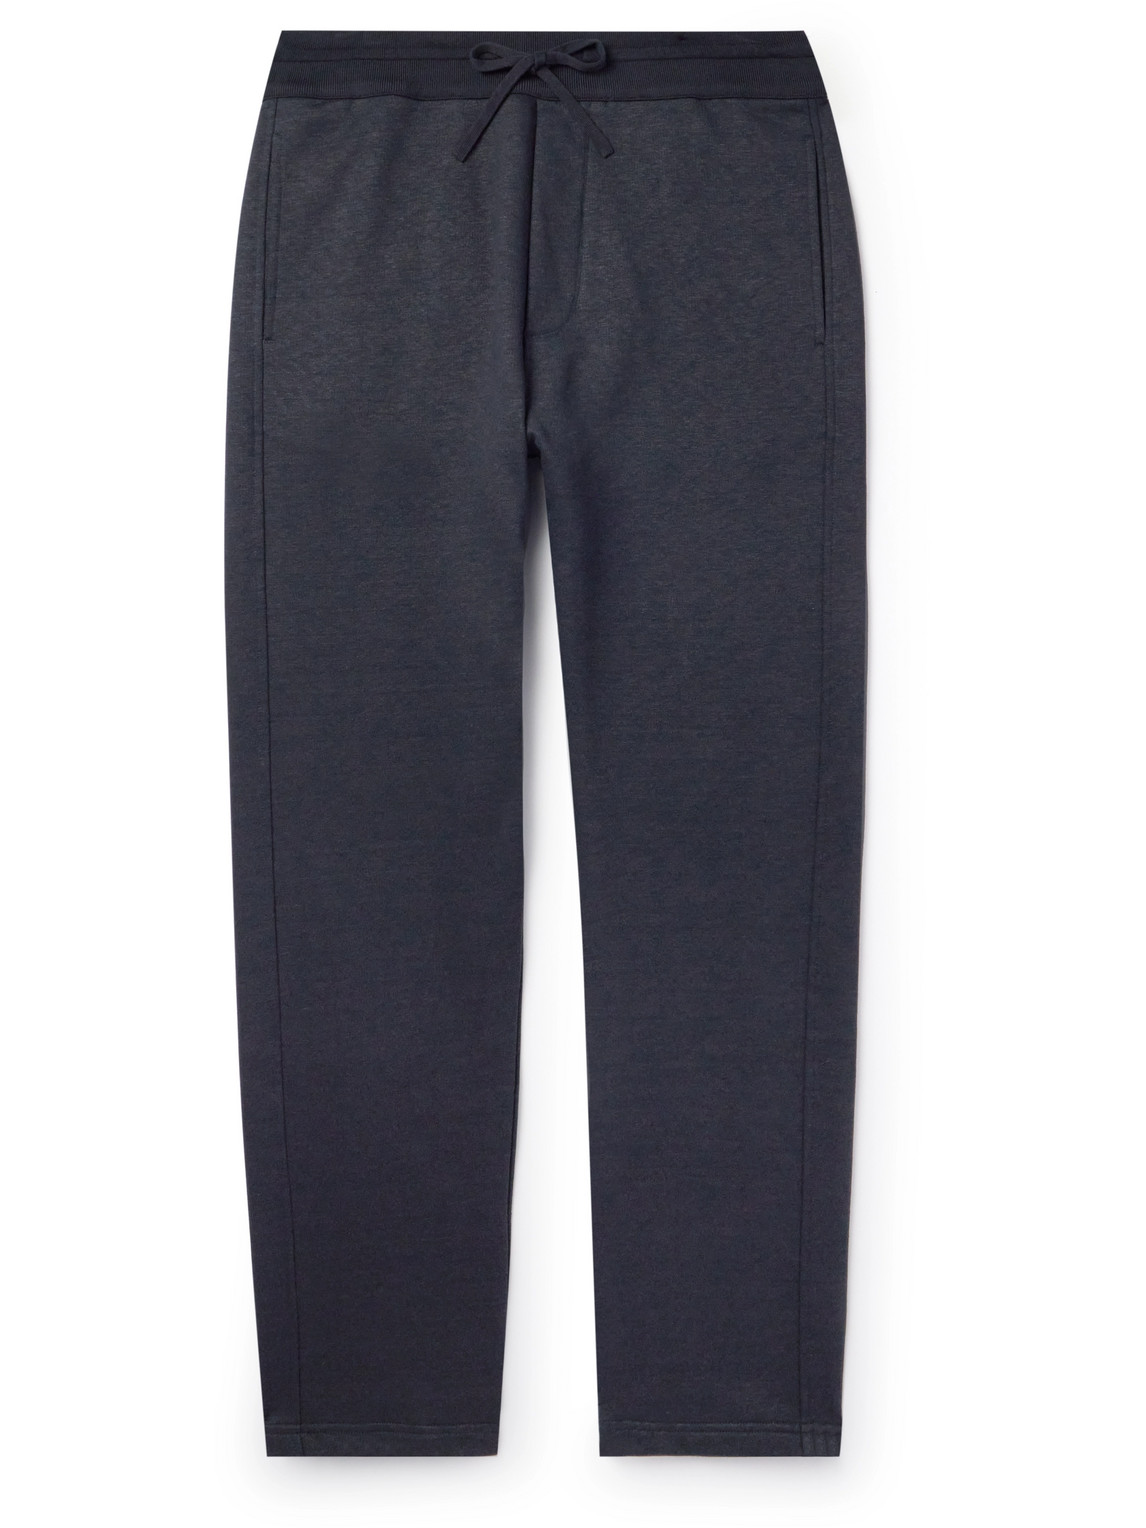 Kawaguchi Slim-Fit Straight-Leg Cotton, Linen and Cashmere-Blend Sweatpants